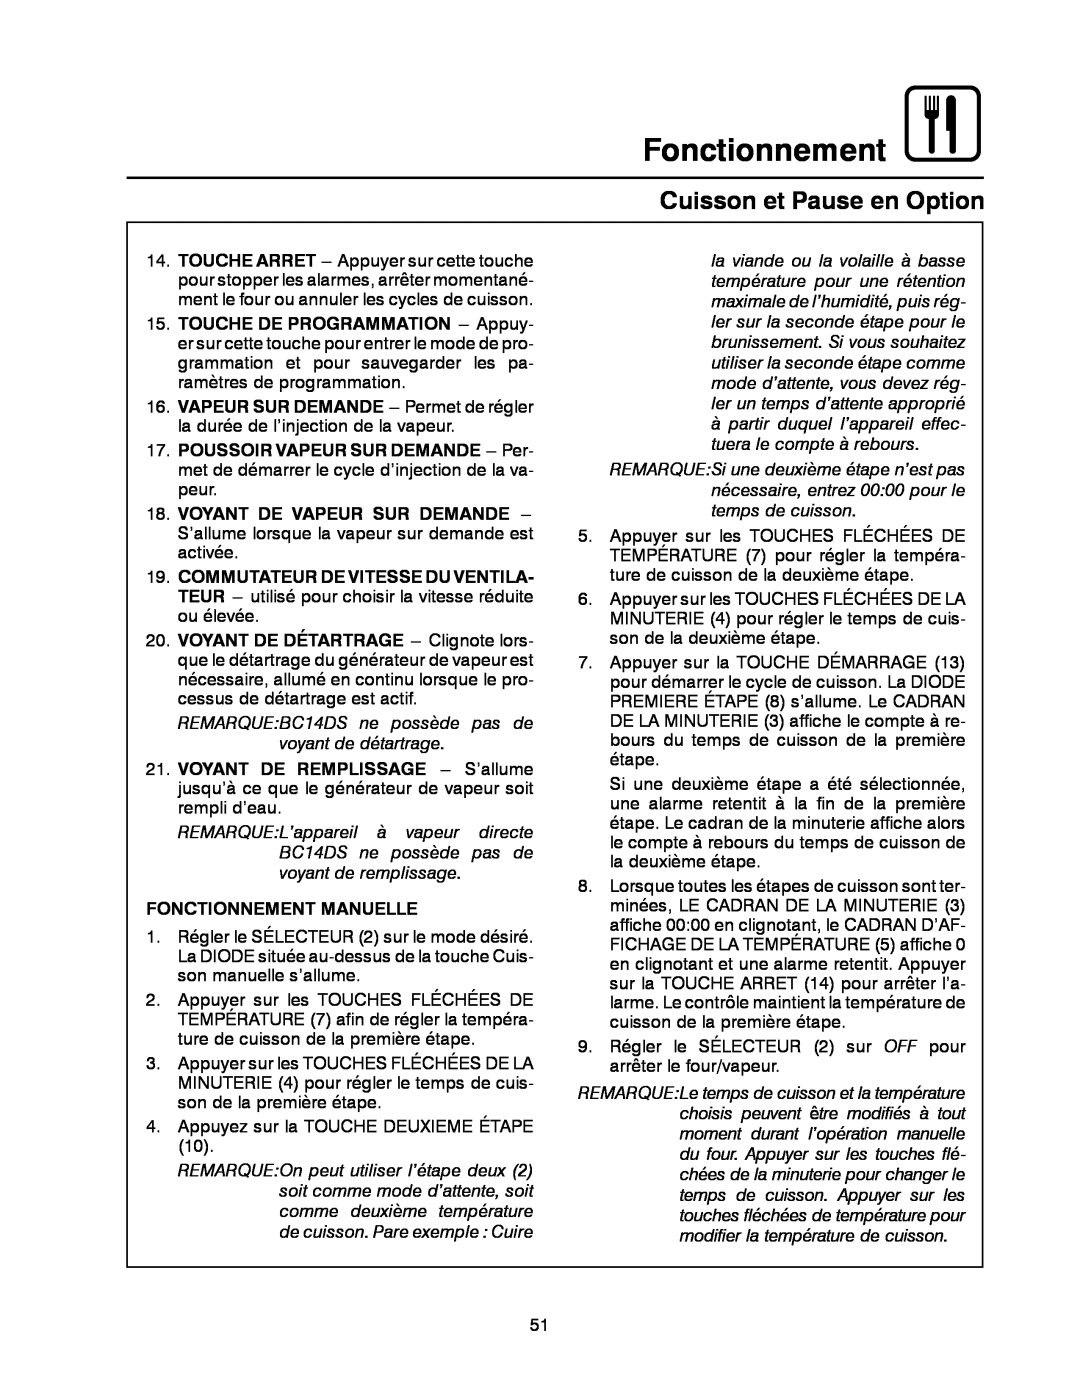 Blodgett BC-20G manual Cuisson et Pause en Option, Voyant De Vapeur Sur Demande, Fonctionnement Manuelle 